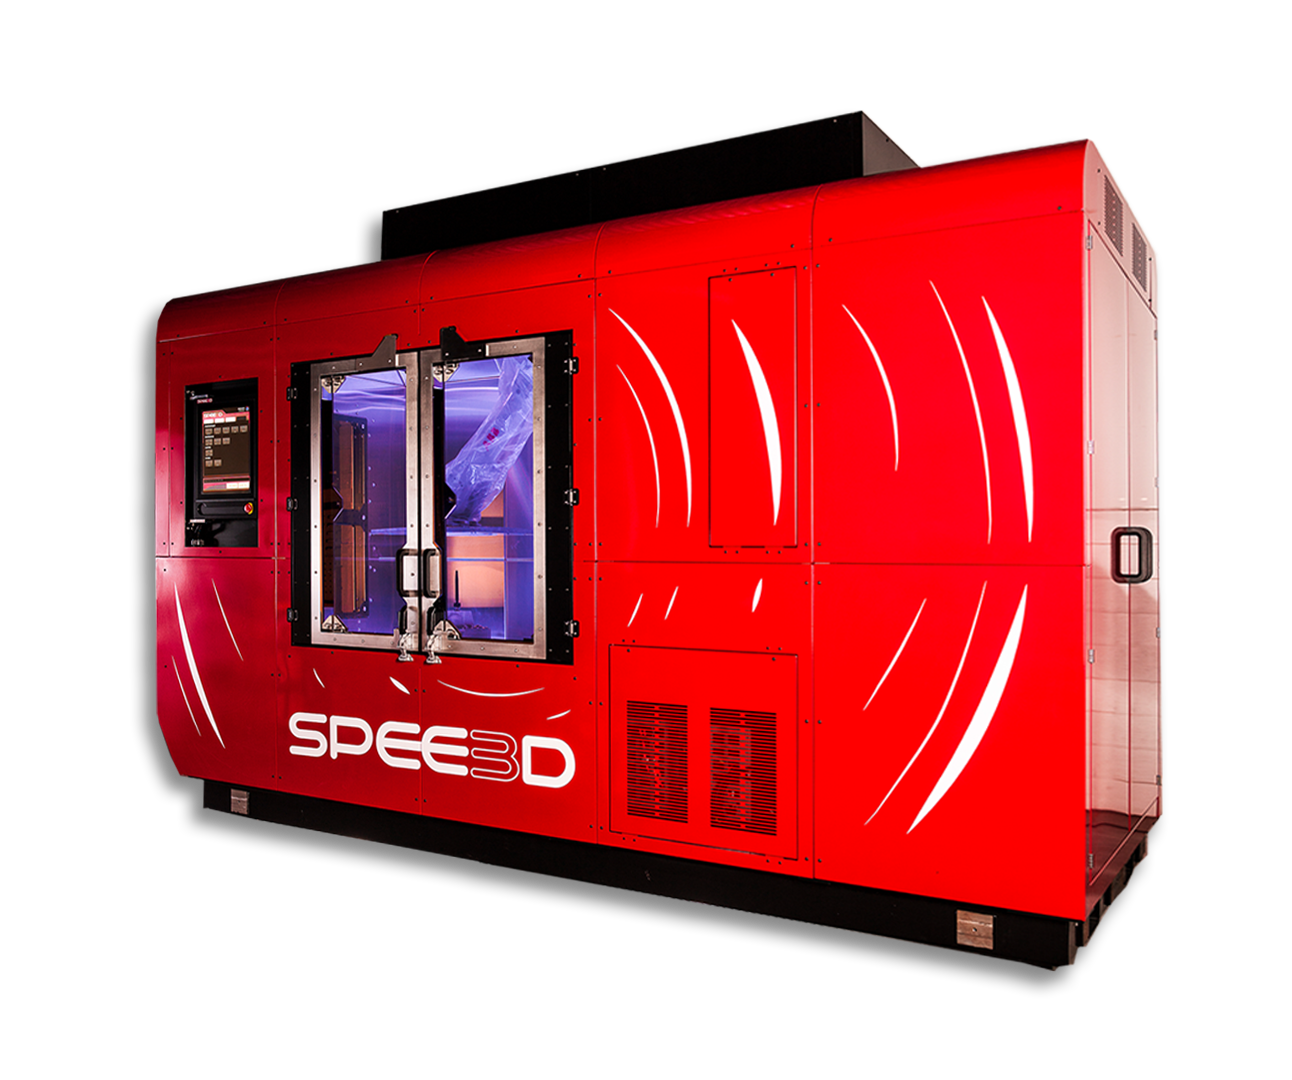 SPEE3D's WarpSPEE3D 3D printer. Photo via SPEE3D.